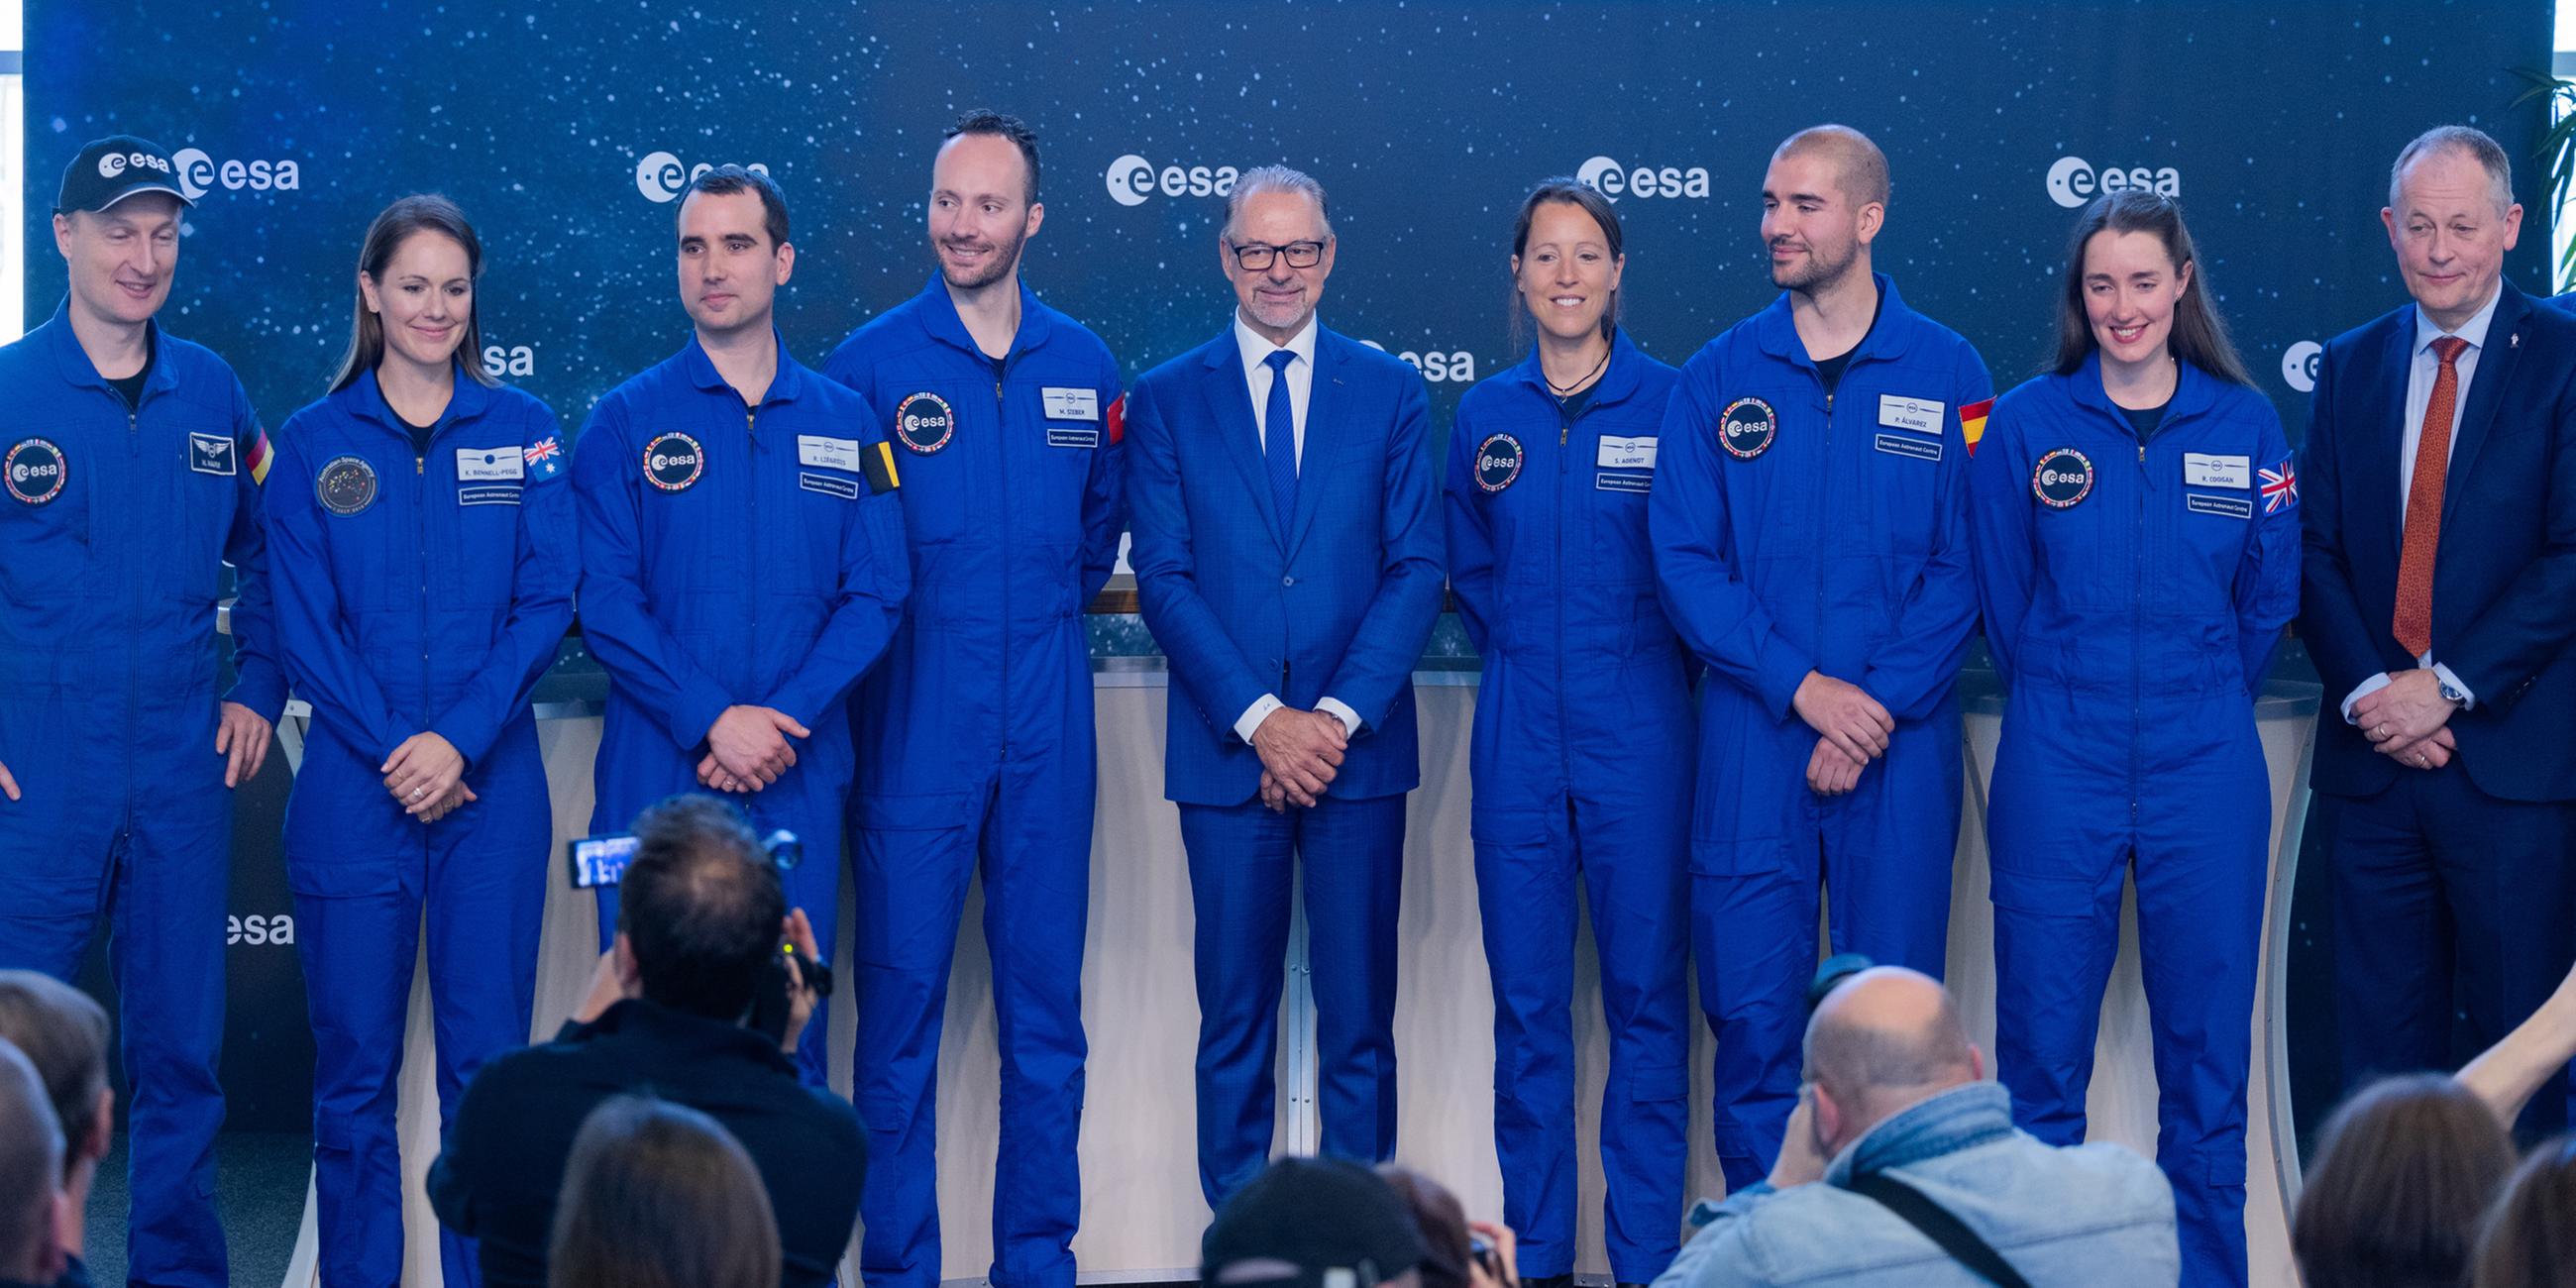 Angehenden Astronautinnen und Astronauten der ESA